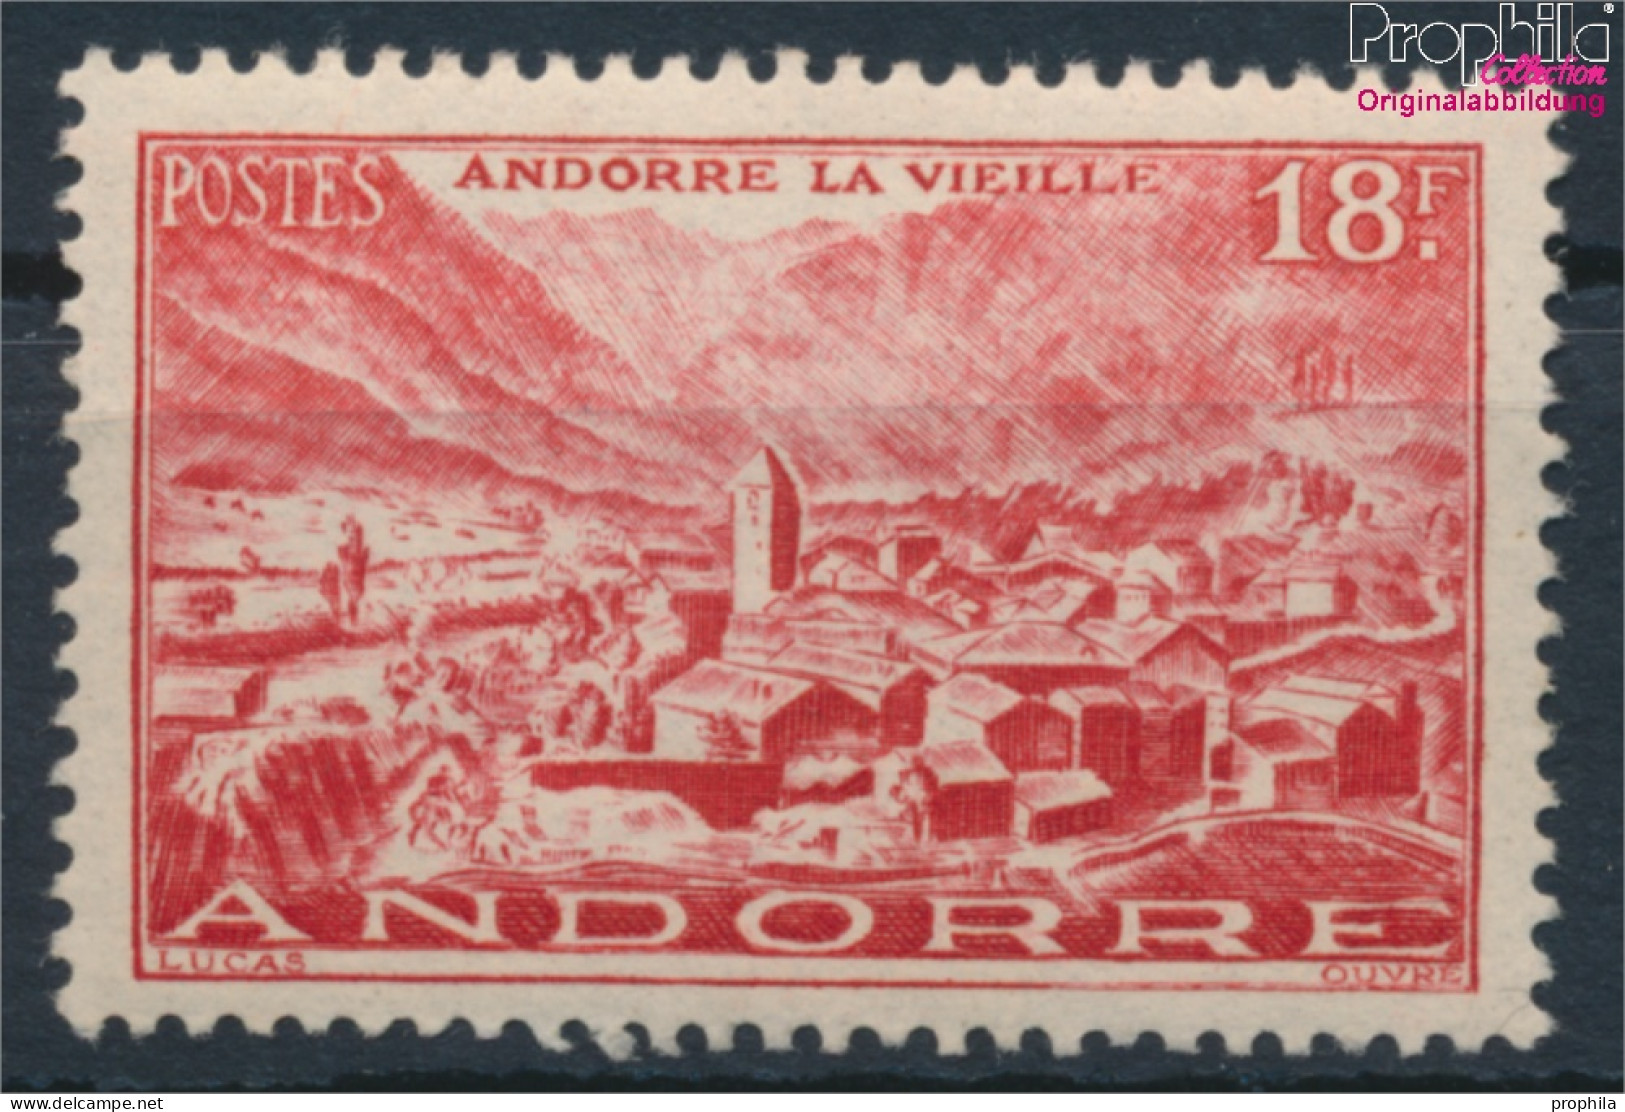 Andorra - Französische Post 133 Postfrisch 1944 Landschaften (10368400 - Neufs